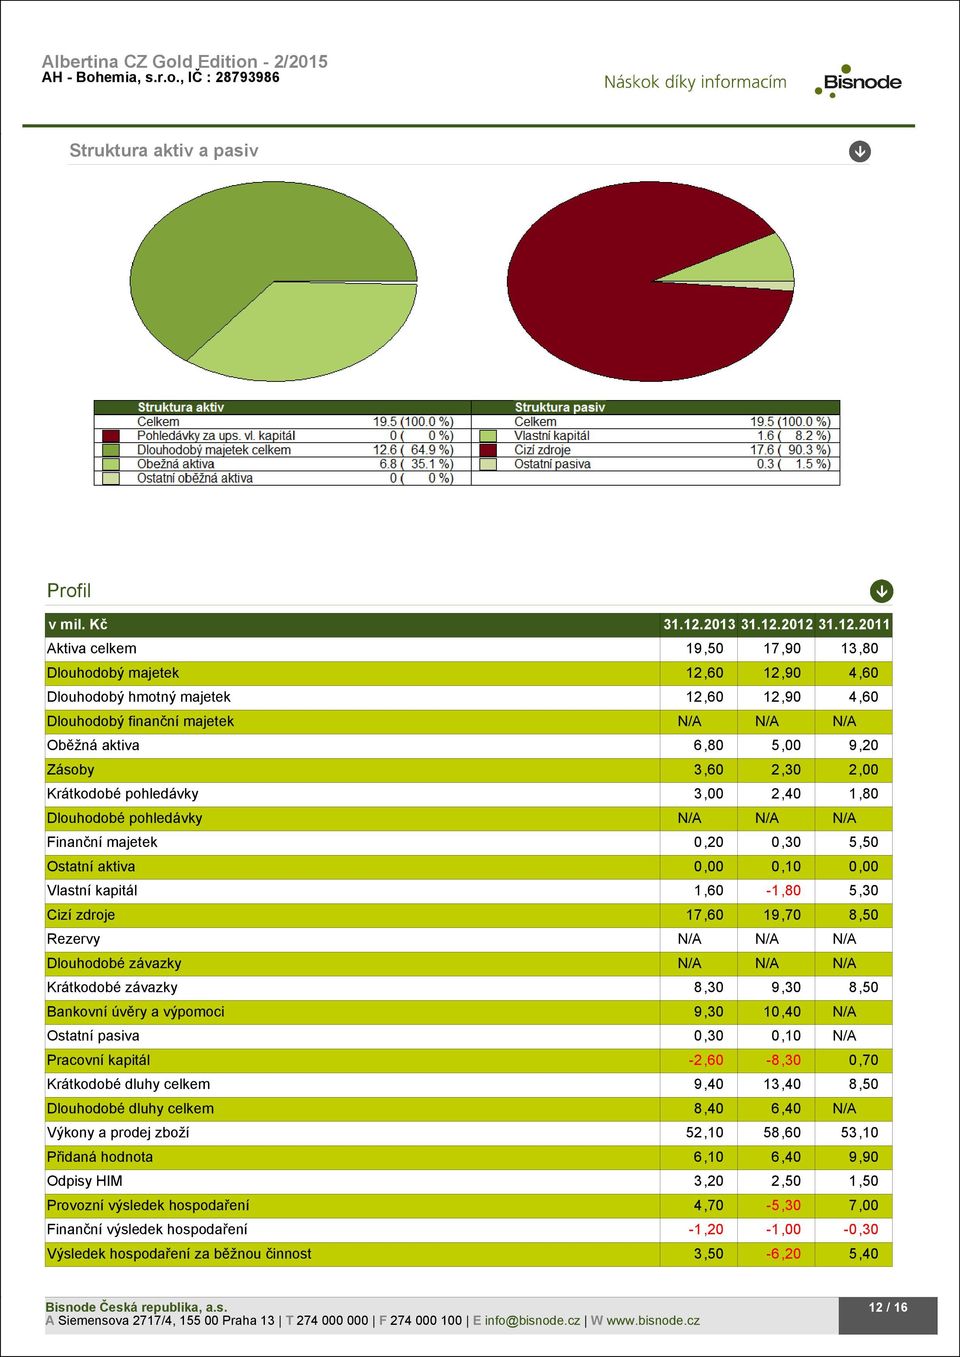 2012 31.12.2011 Aktiva celkem 19,50 17,90 13,80 Dlouhodobý majetek 12,60 12,90 4,60 Dlouhodobý hmotný majetek 12,60 12,90 4,60 Dlouhodobý finanční majetek N/A N/A N/A Oběžná aktiva 6,80 5,00 9,20